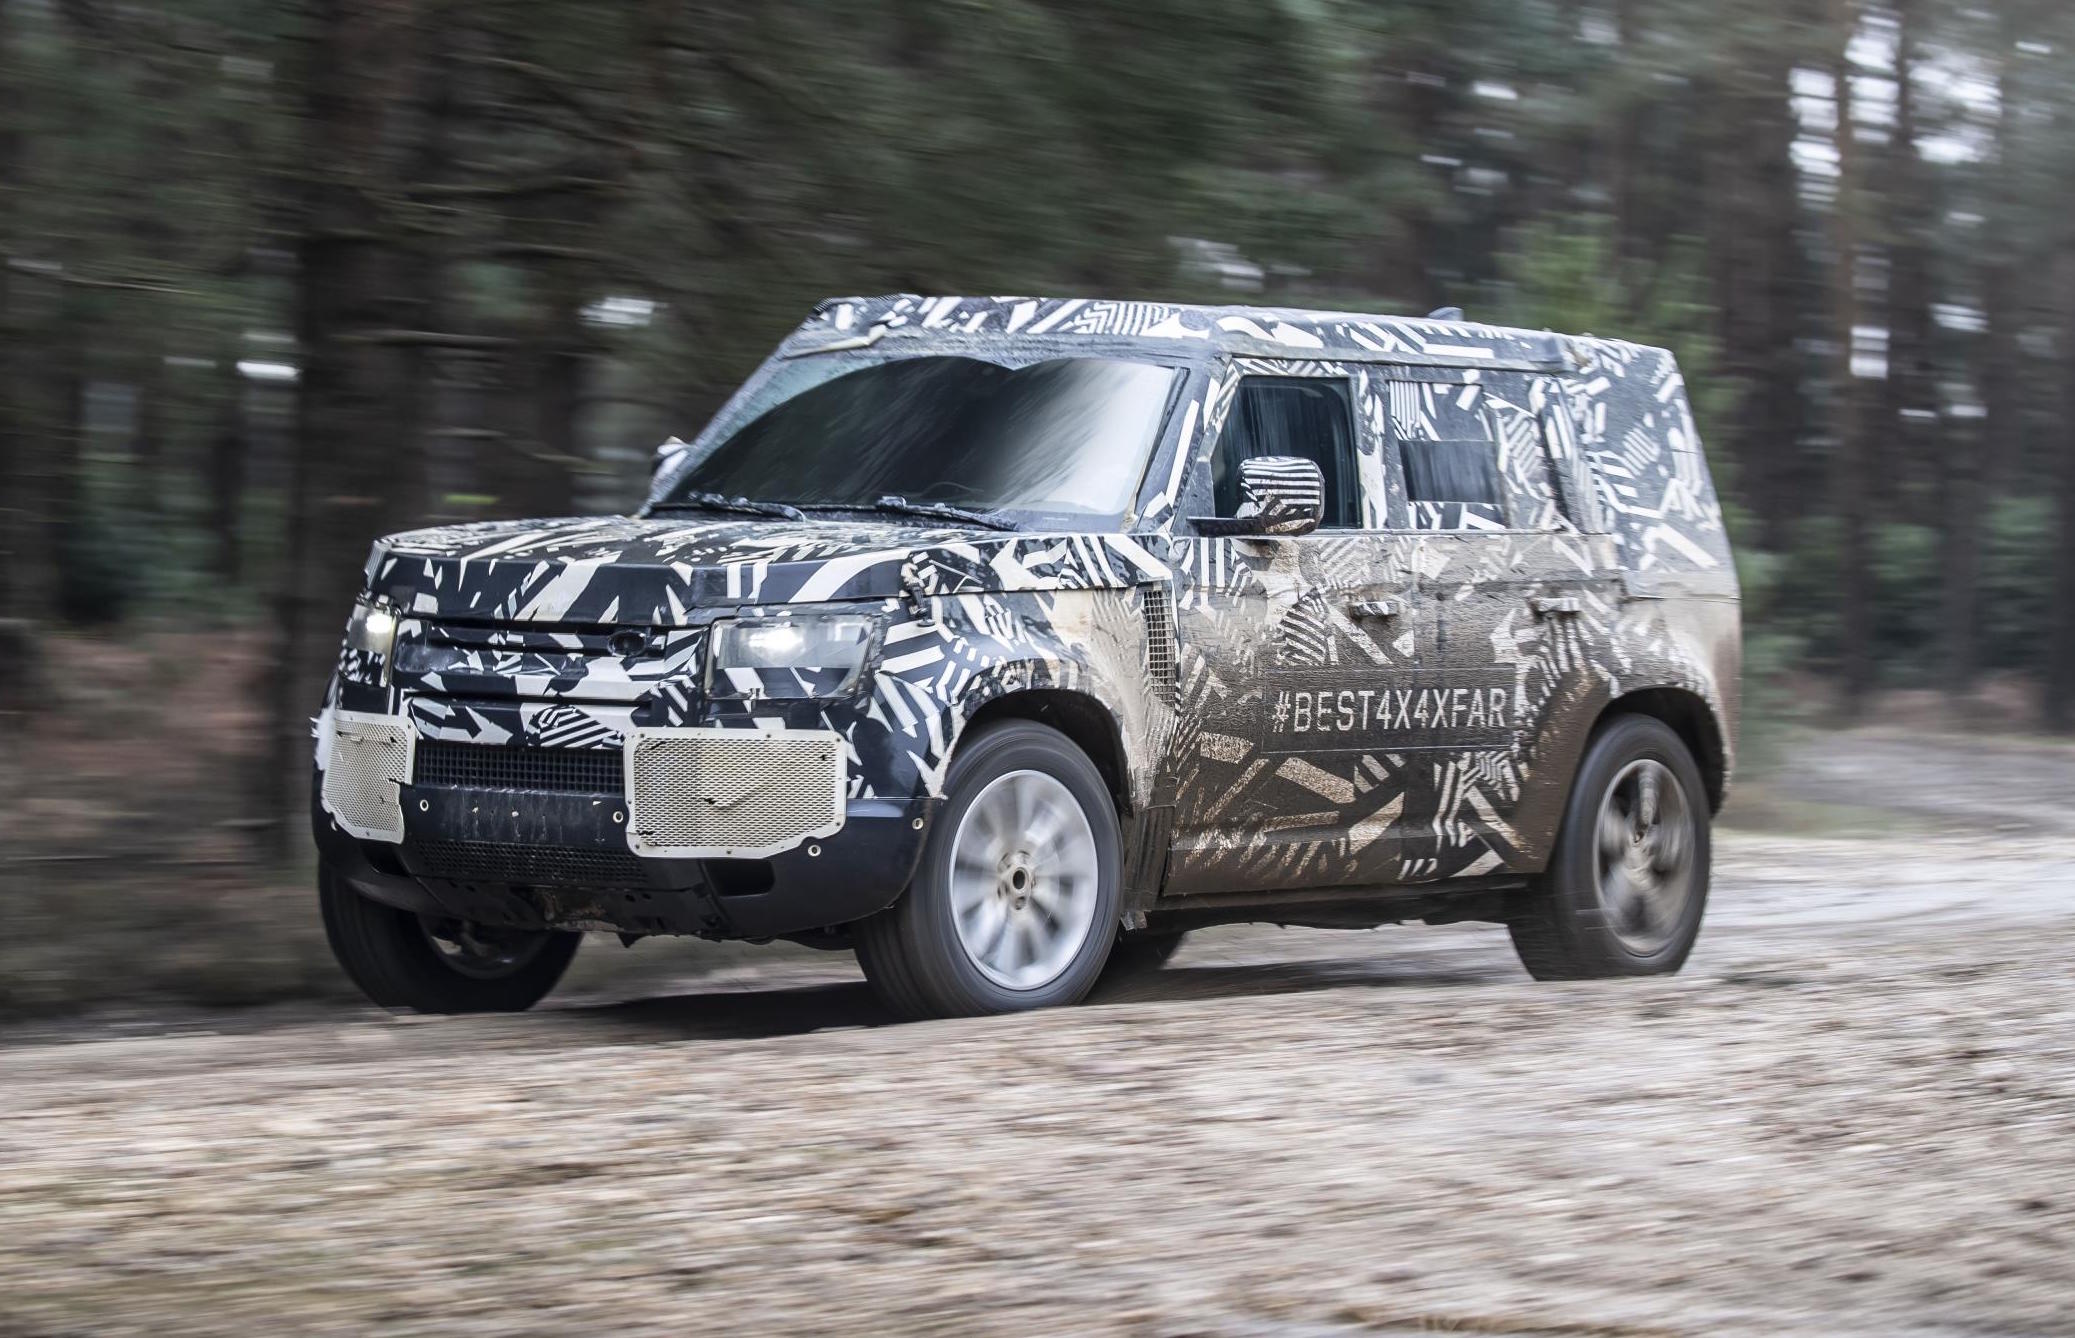 2020 Land Rover Defender reveal confirmed for Frankfurt show